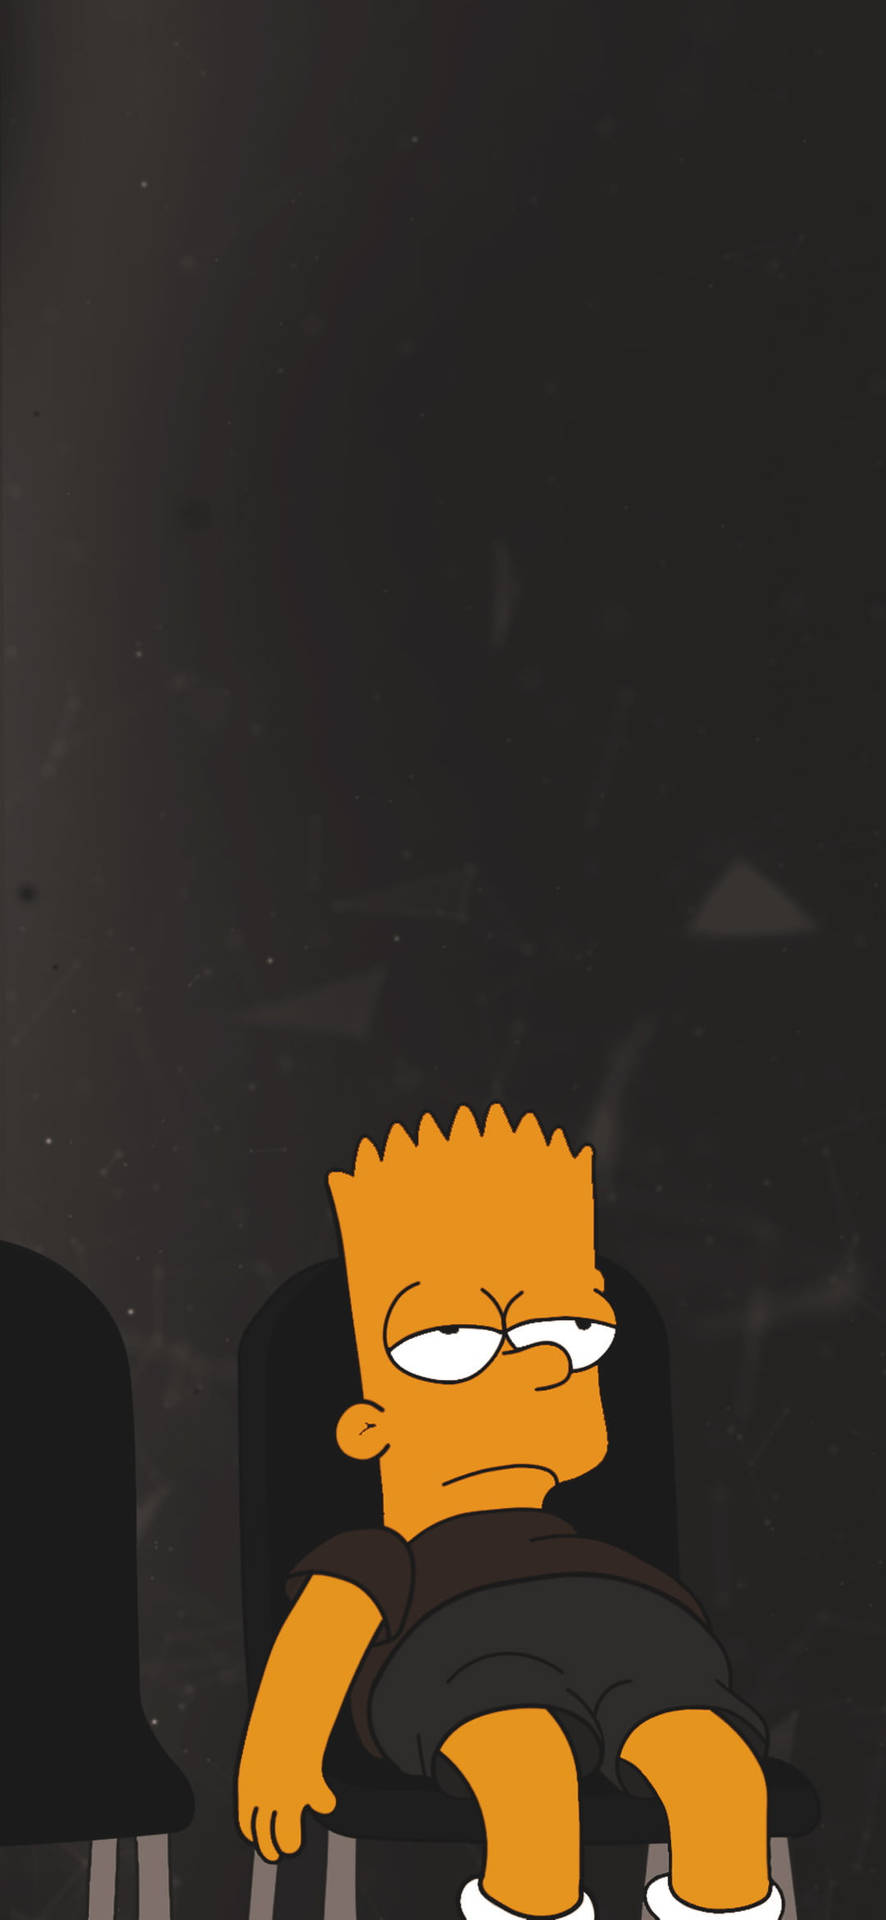 En trist og deprimerende Bart Simpson ser sur ud mod en grå baggrund. Wallpaper